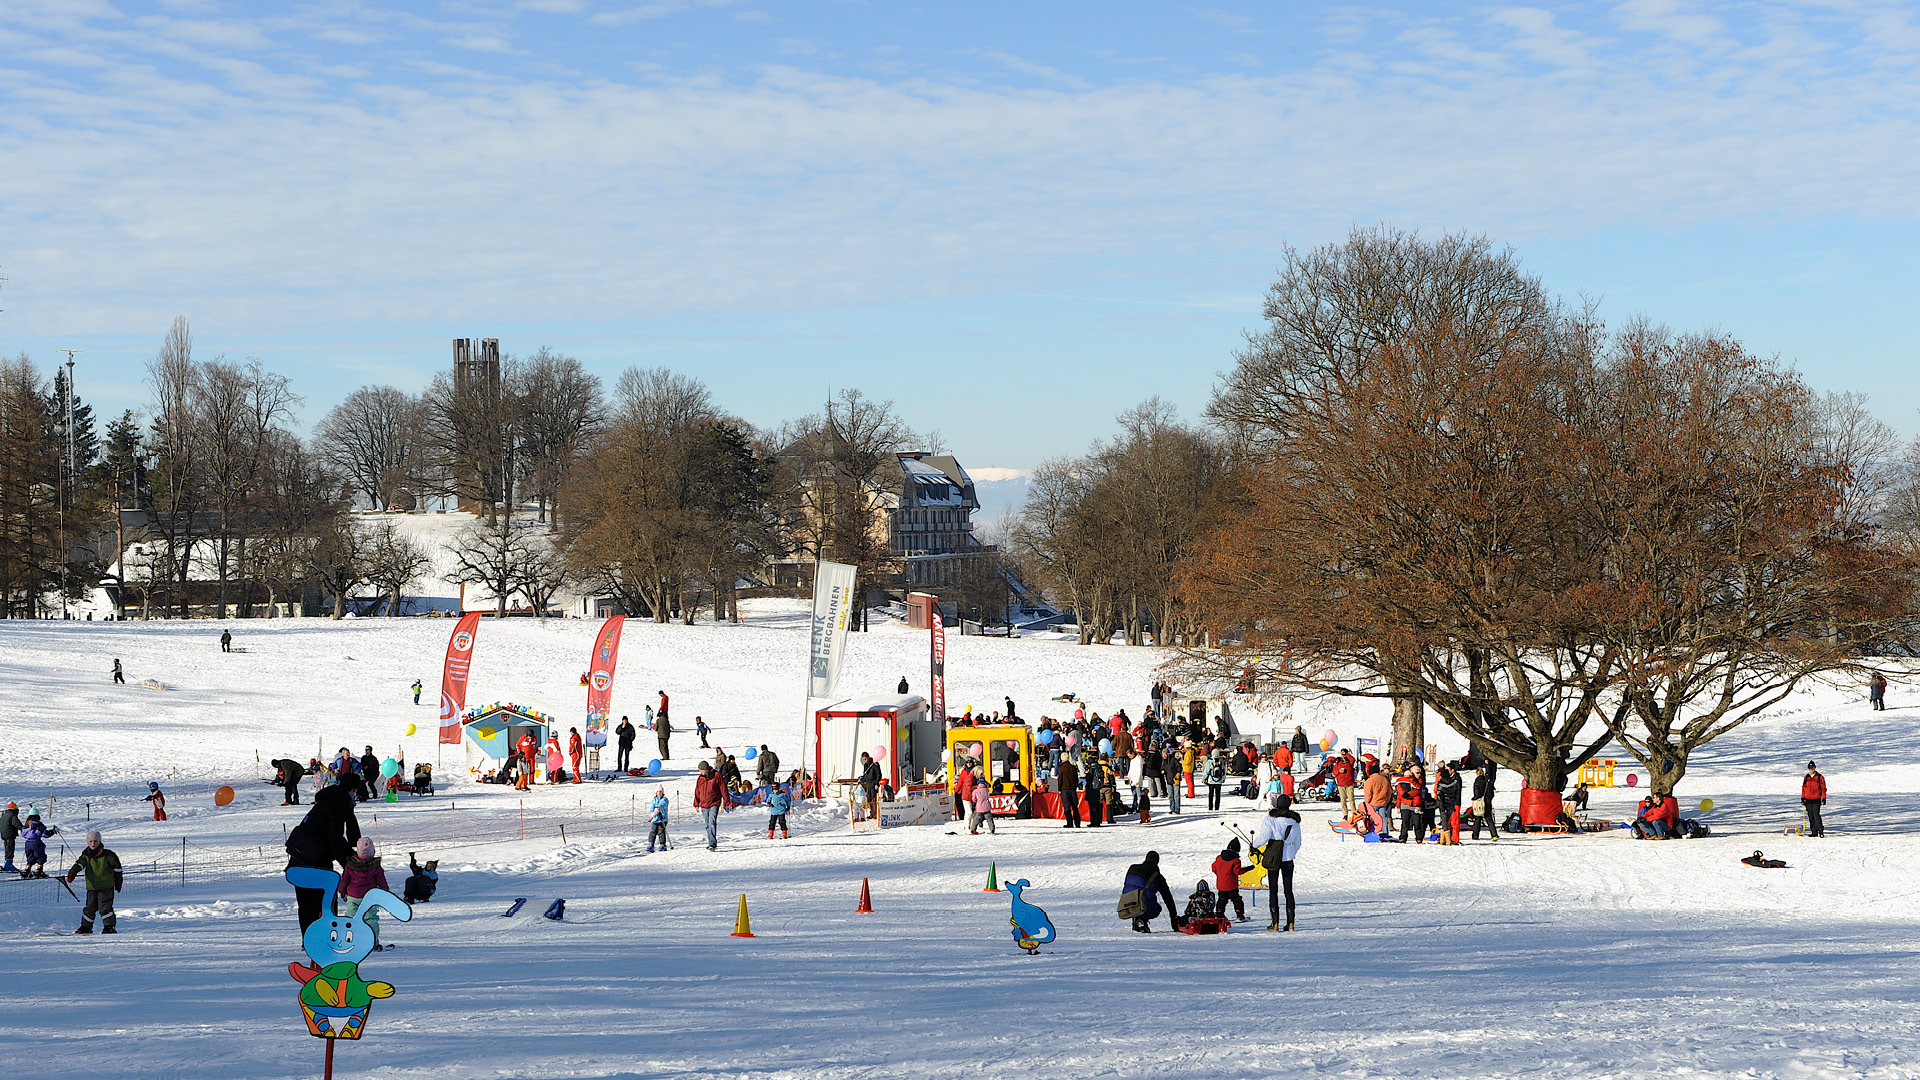 Der Gurten ist mit Schnee bedeckt. Jede Menge Menschen sind mit dem Schlitten und mit Ski unterwegs. In der Mitte befindet sich der Kinderskilift